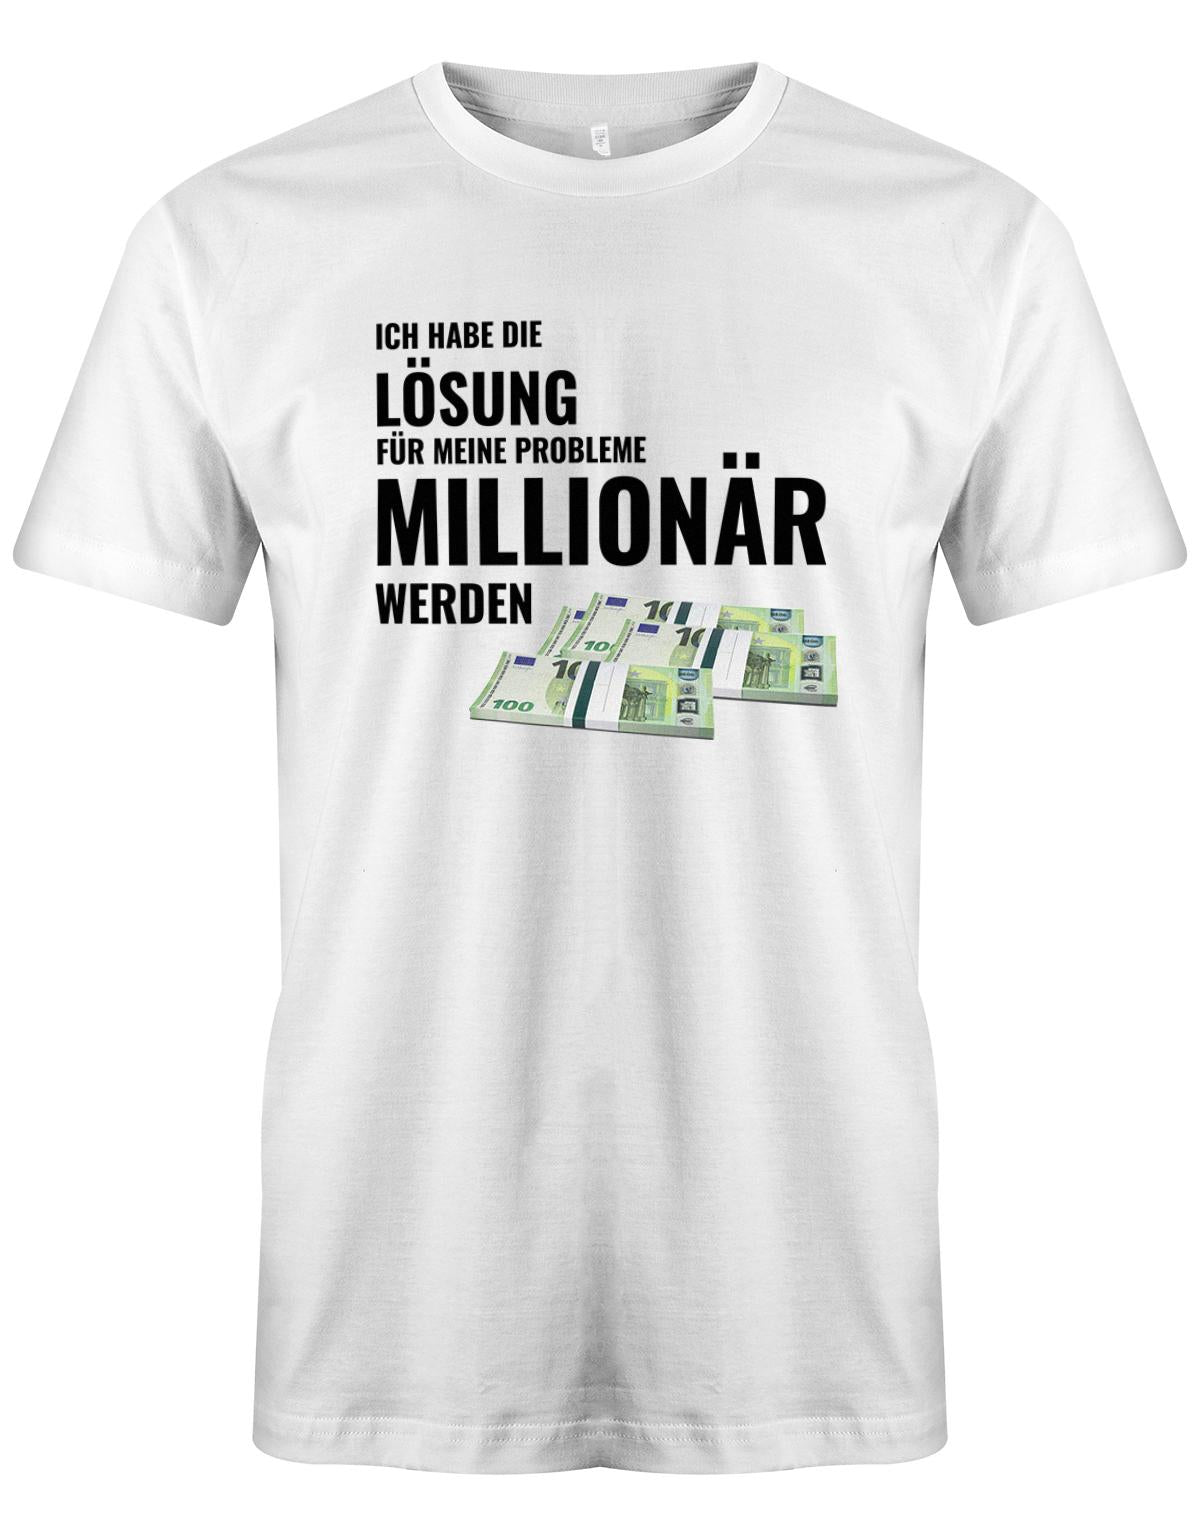 Ich habe die Lösung meiner Probleme - Millionär werden - Herren T-Shirt Weiss